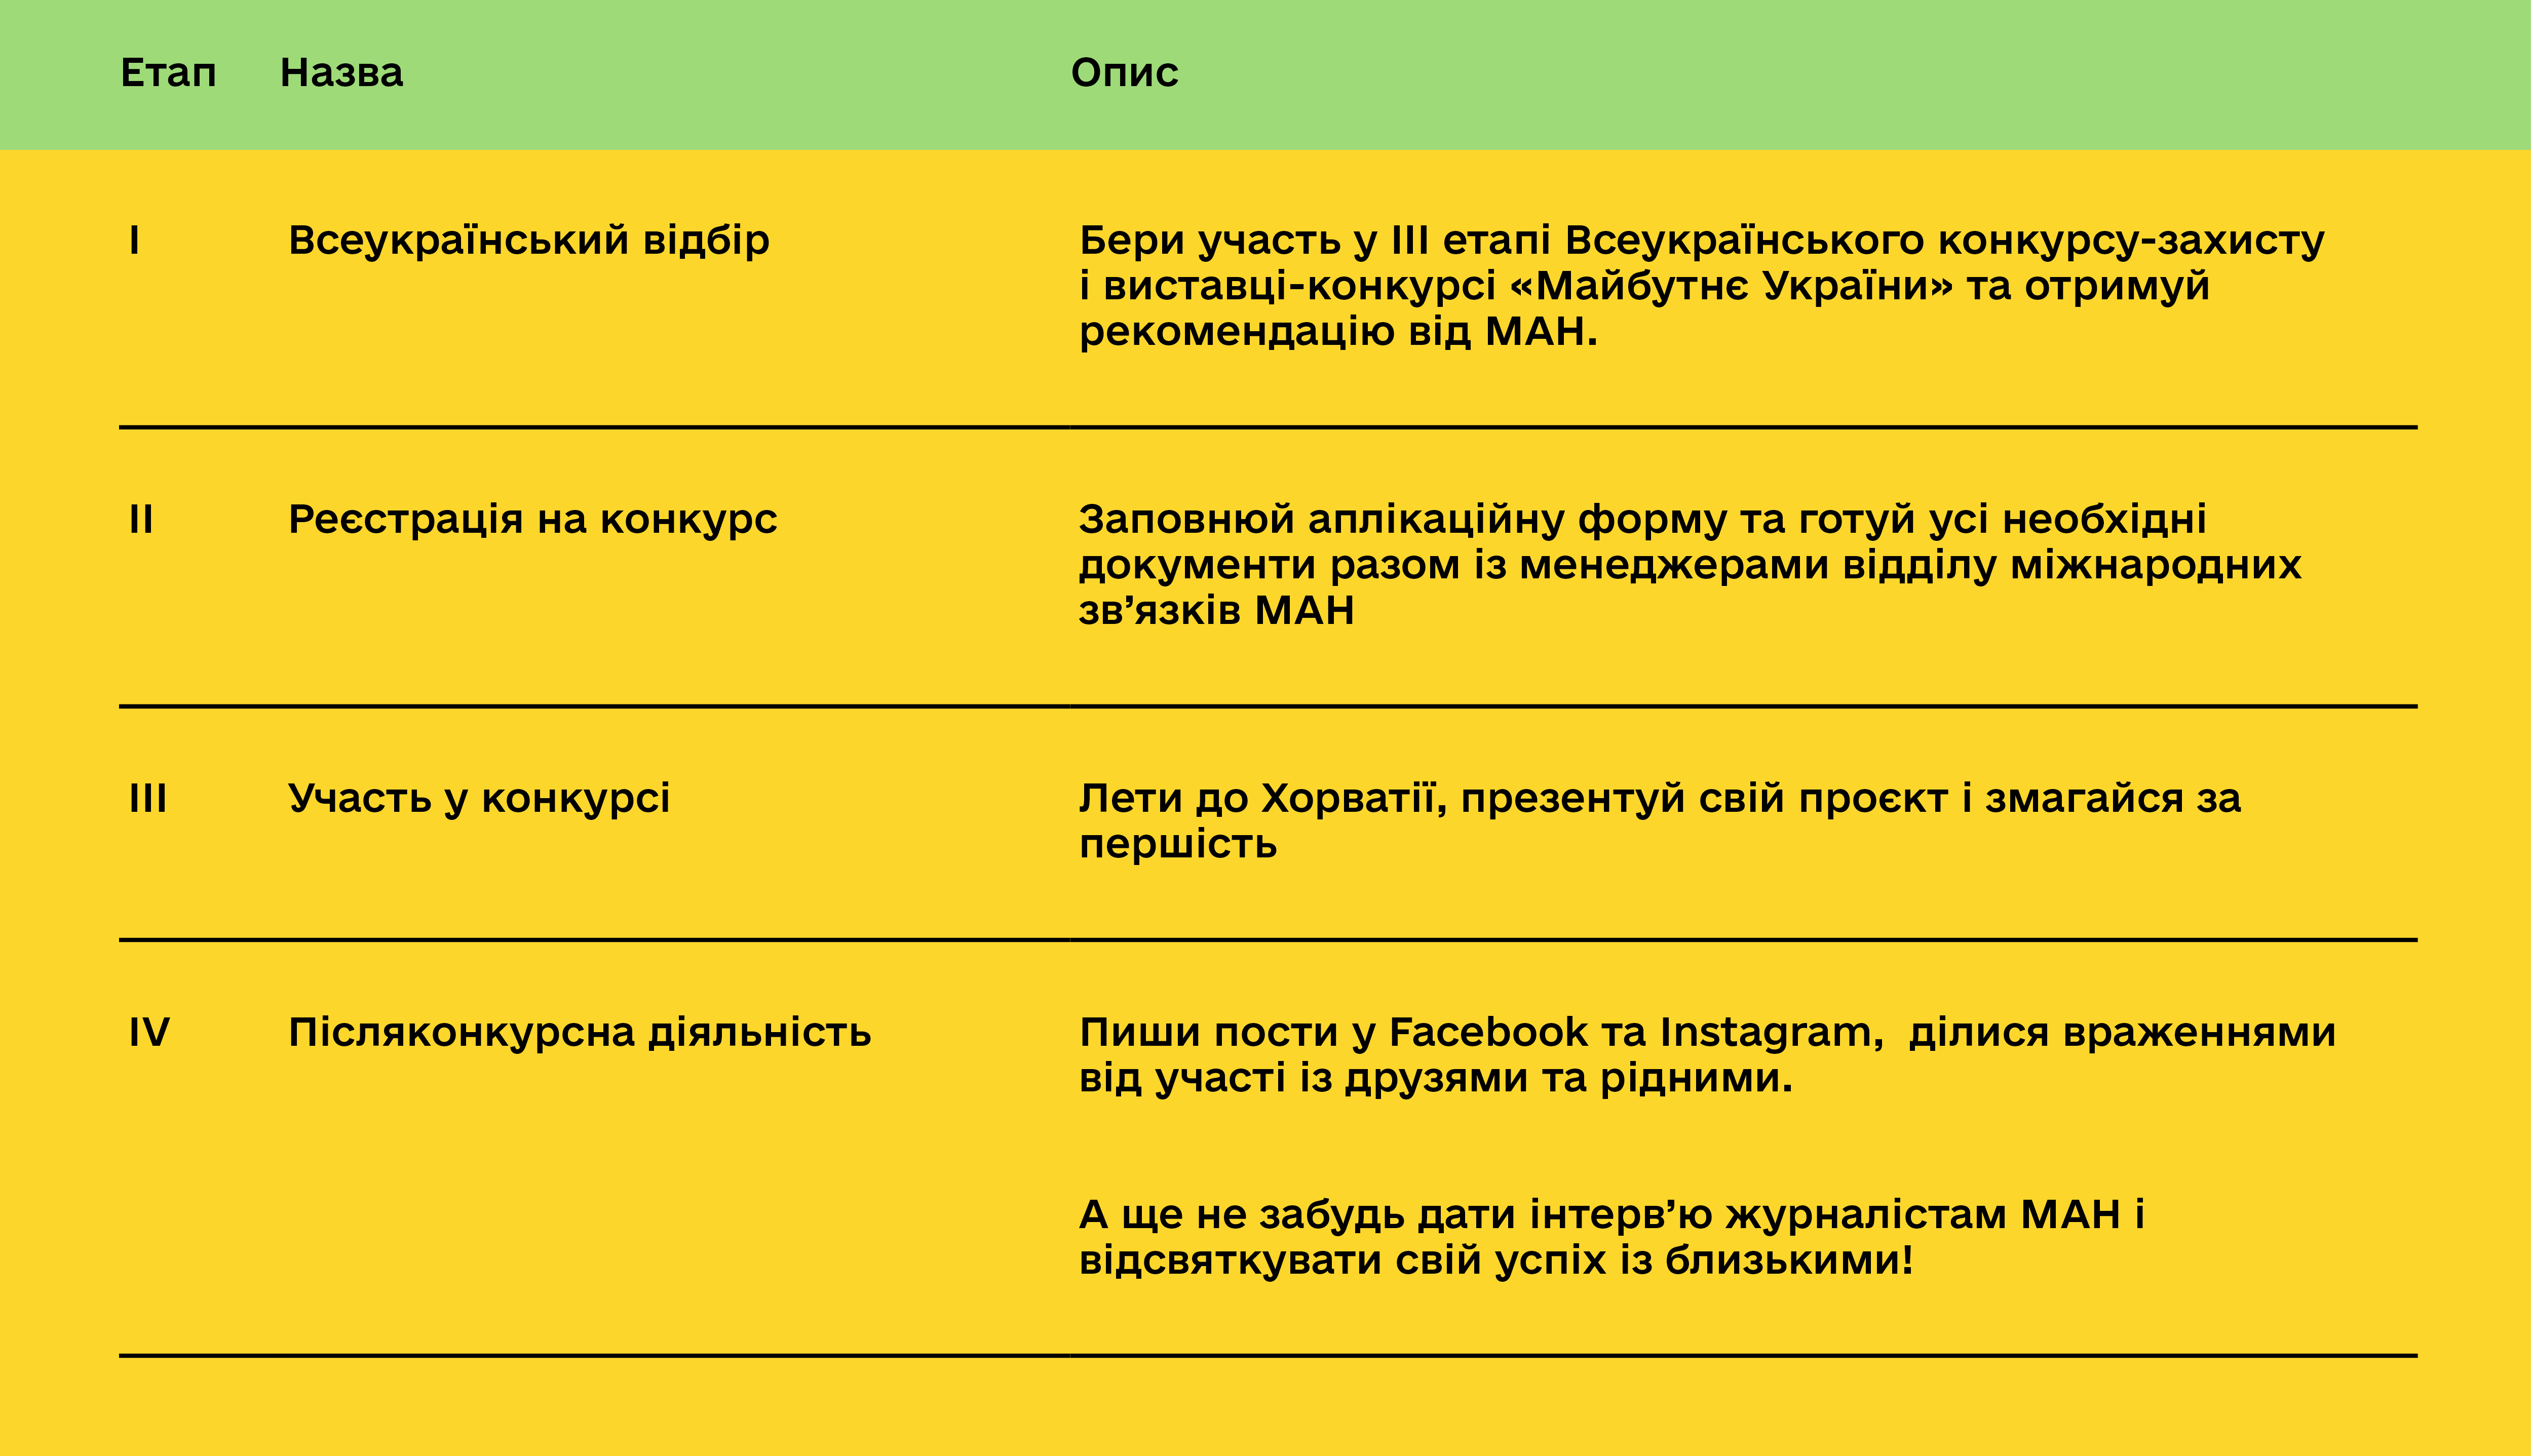 13. INOVA - Таблиця з етапами